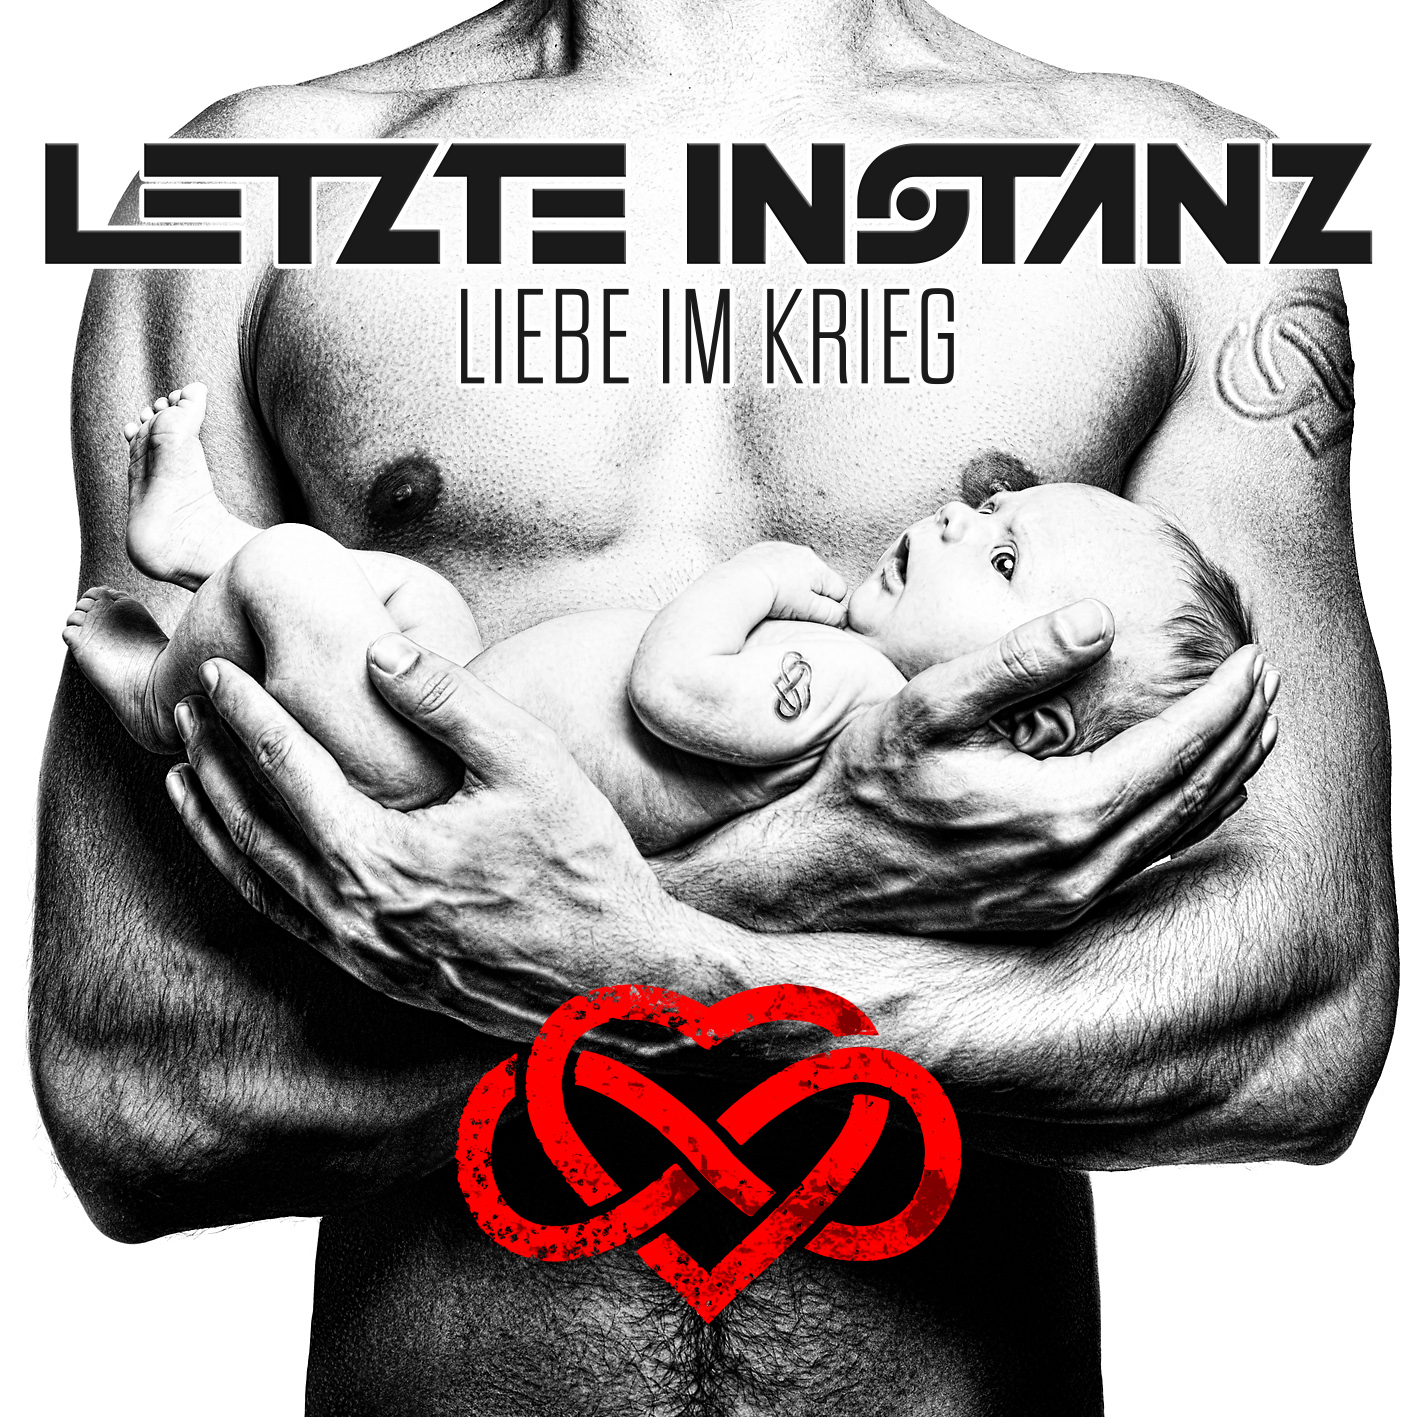 CD-Cover Motiv Letzte Instanz - Liebe im Krieg